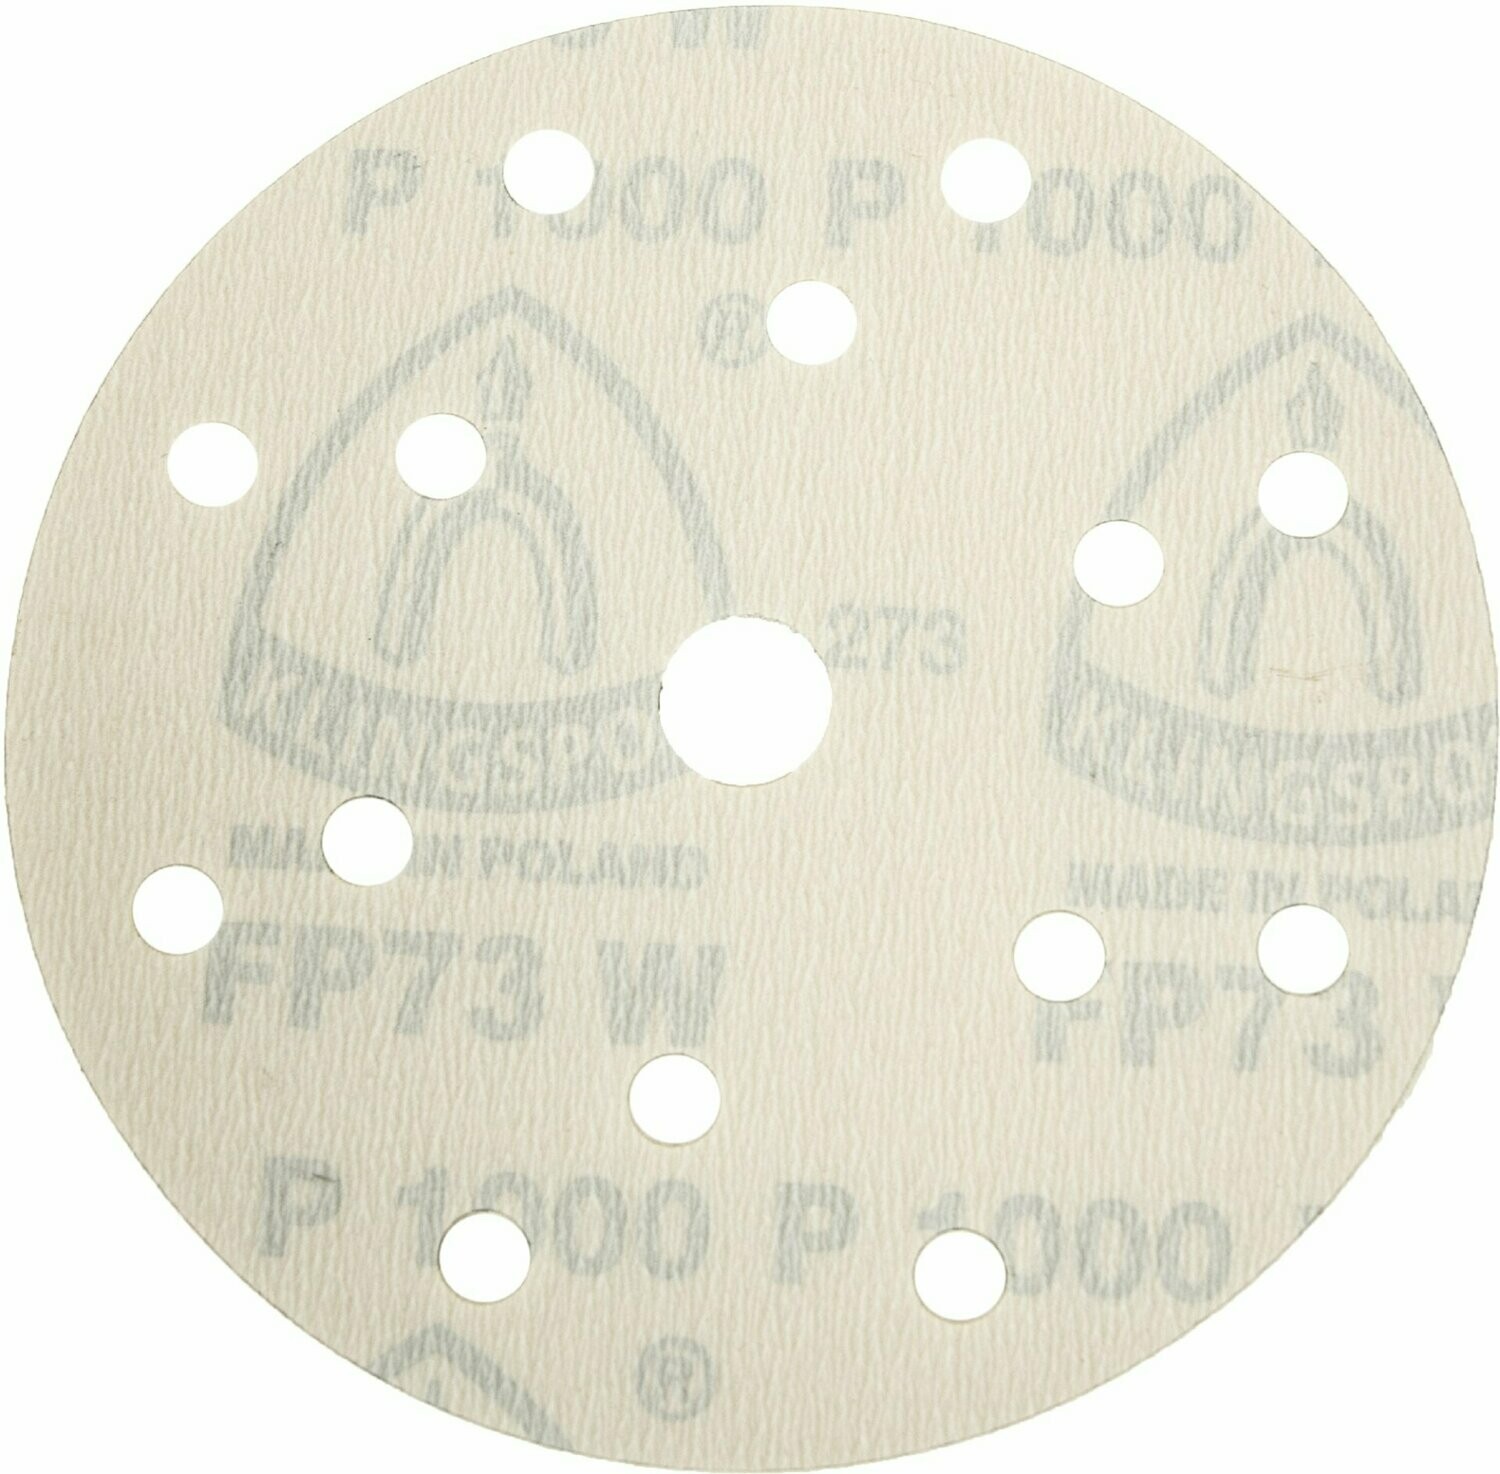 Klingspor FP 73 WK Scheiben mit Filmunterlage, kletthaftend für Farbe, Lack, Spachtel| jeweils 100 Stück | 150 mm Durchmesser